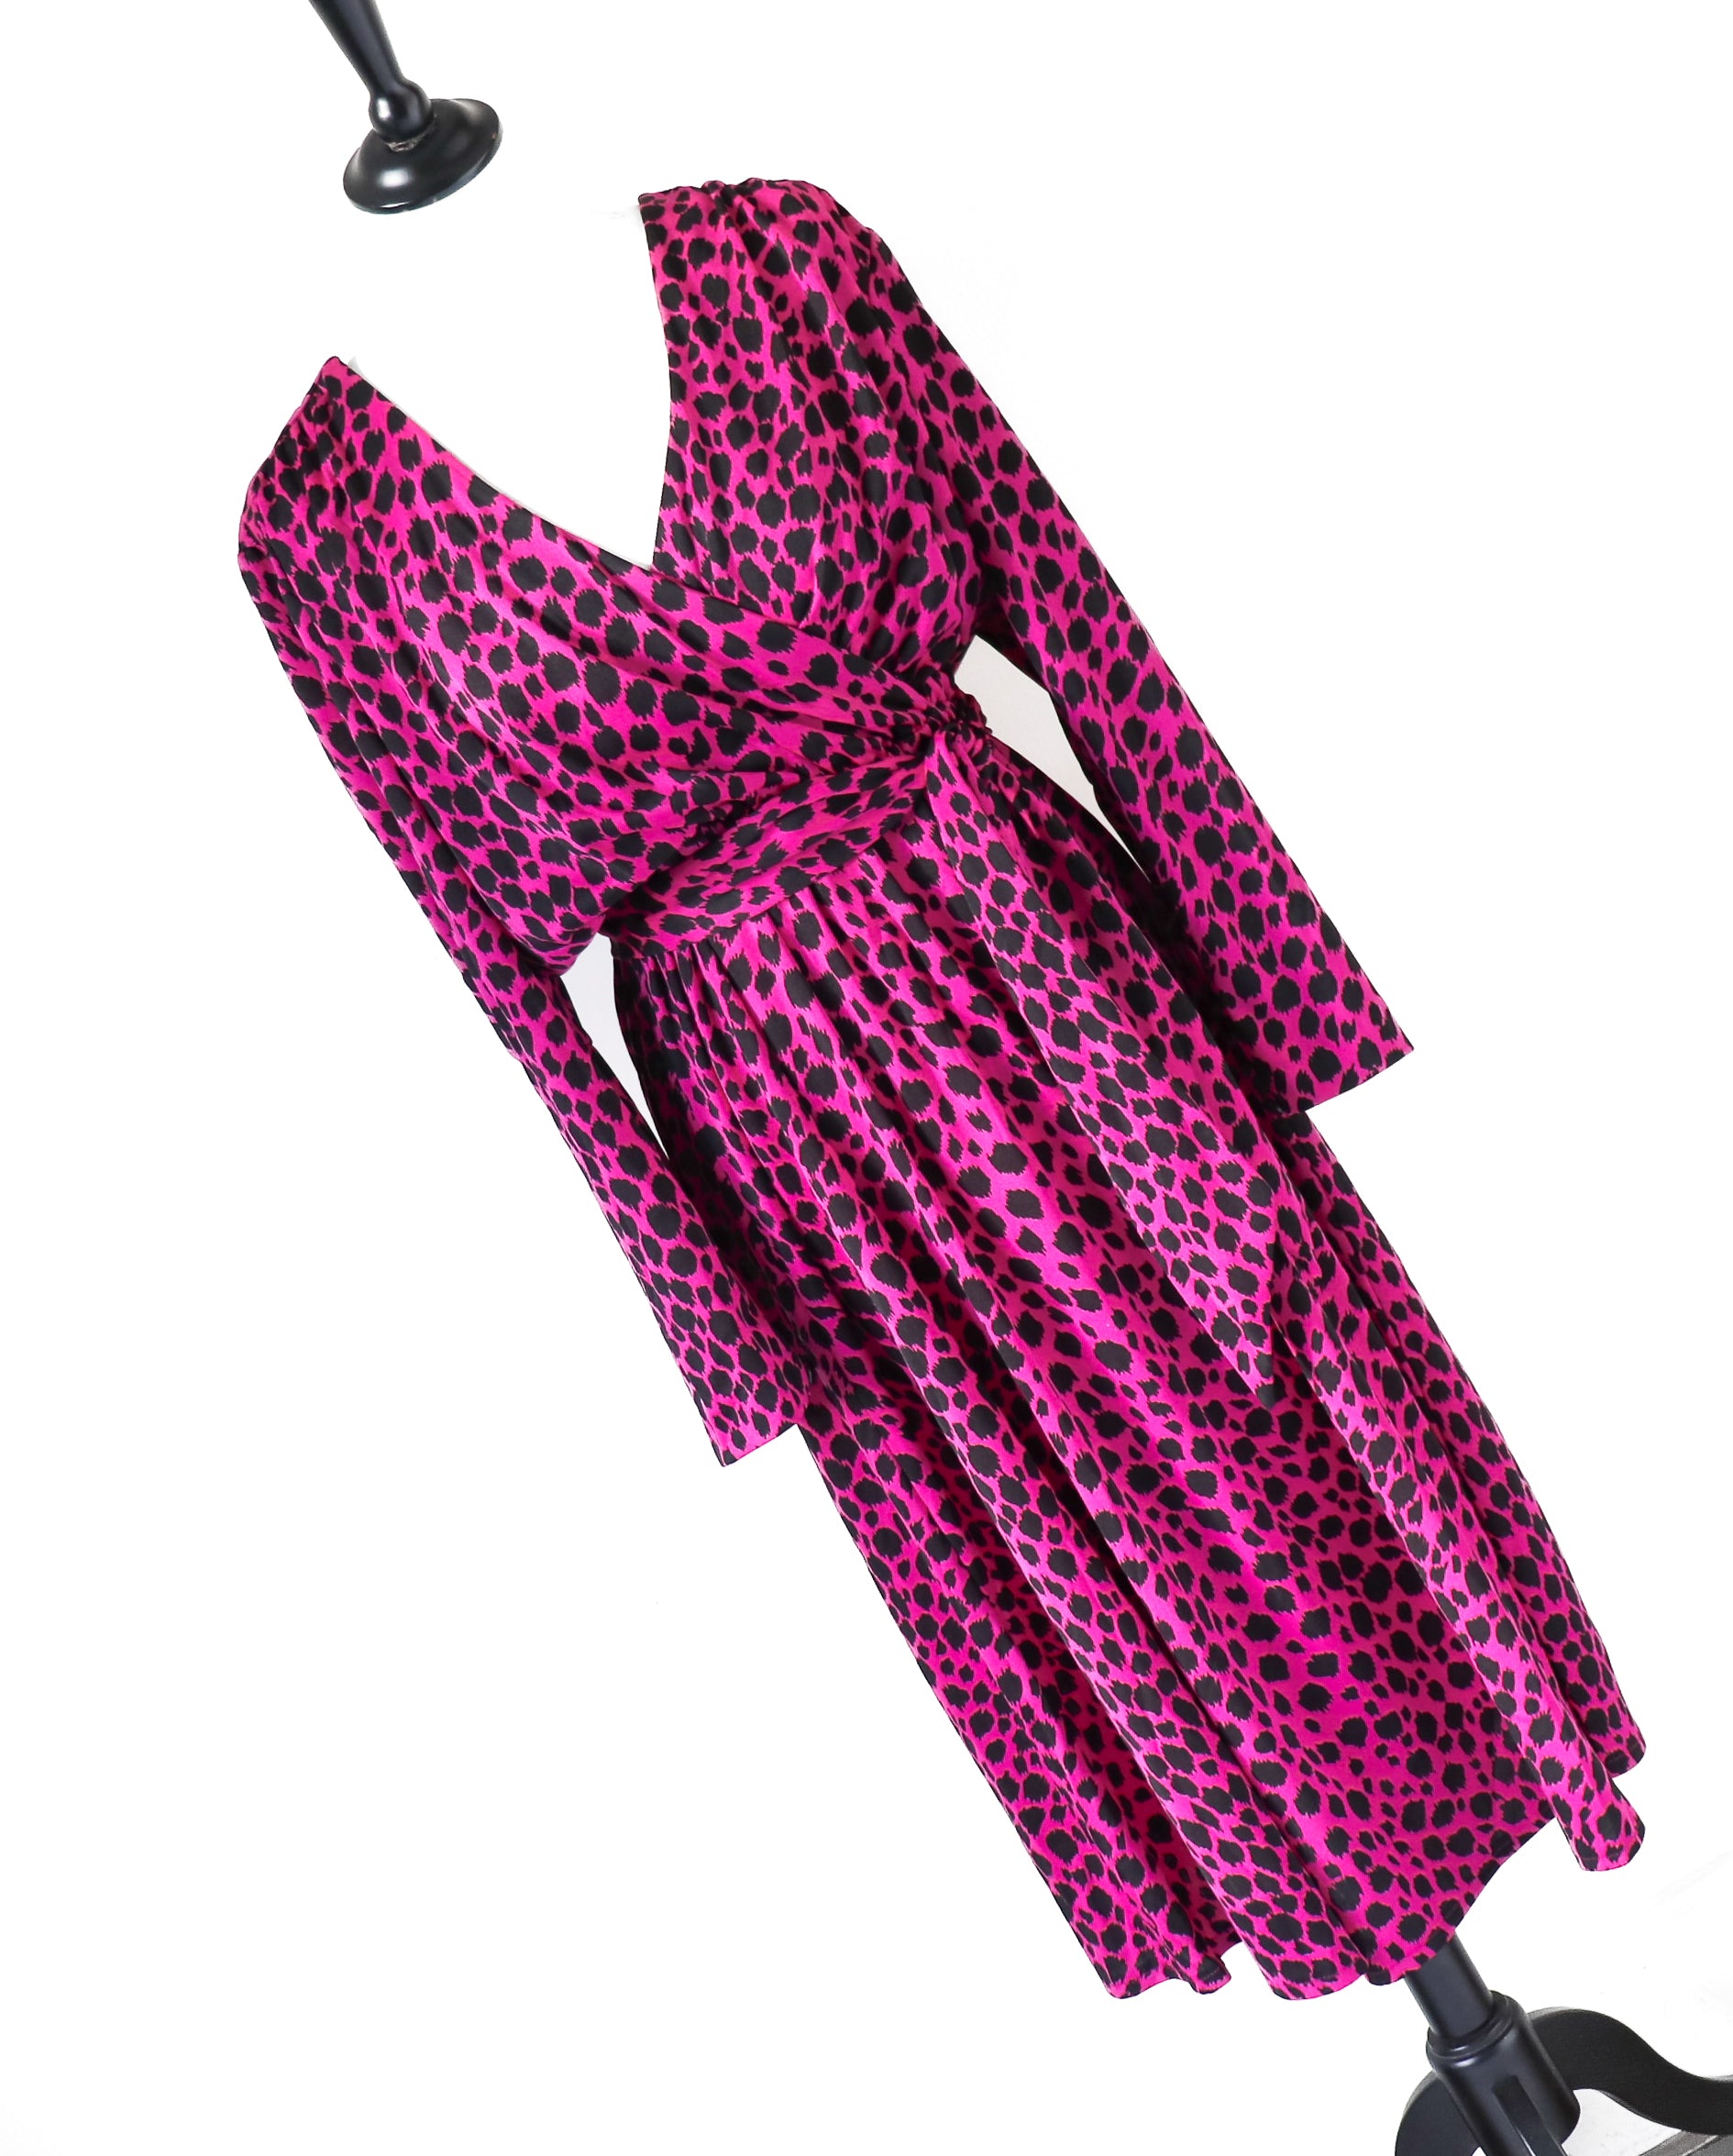 Cresta Pink Leopard Print Dress - Vintage 1980s - Polyester  - Fit L / UK 14